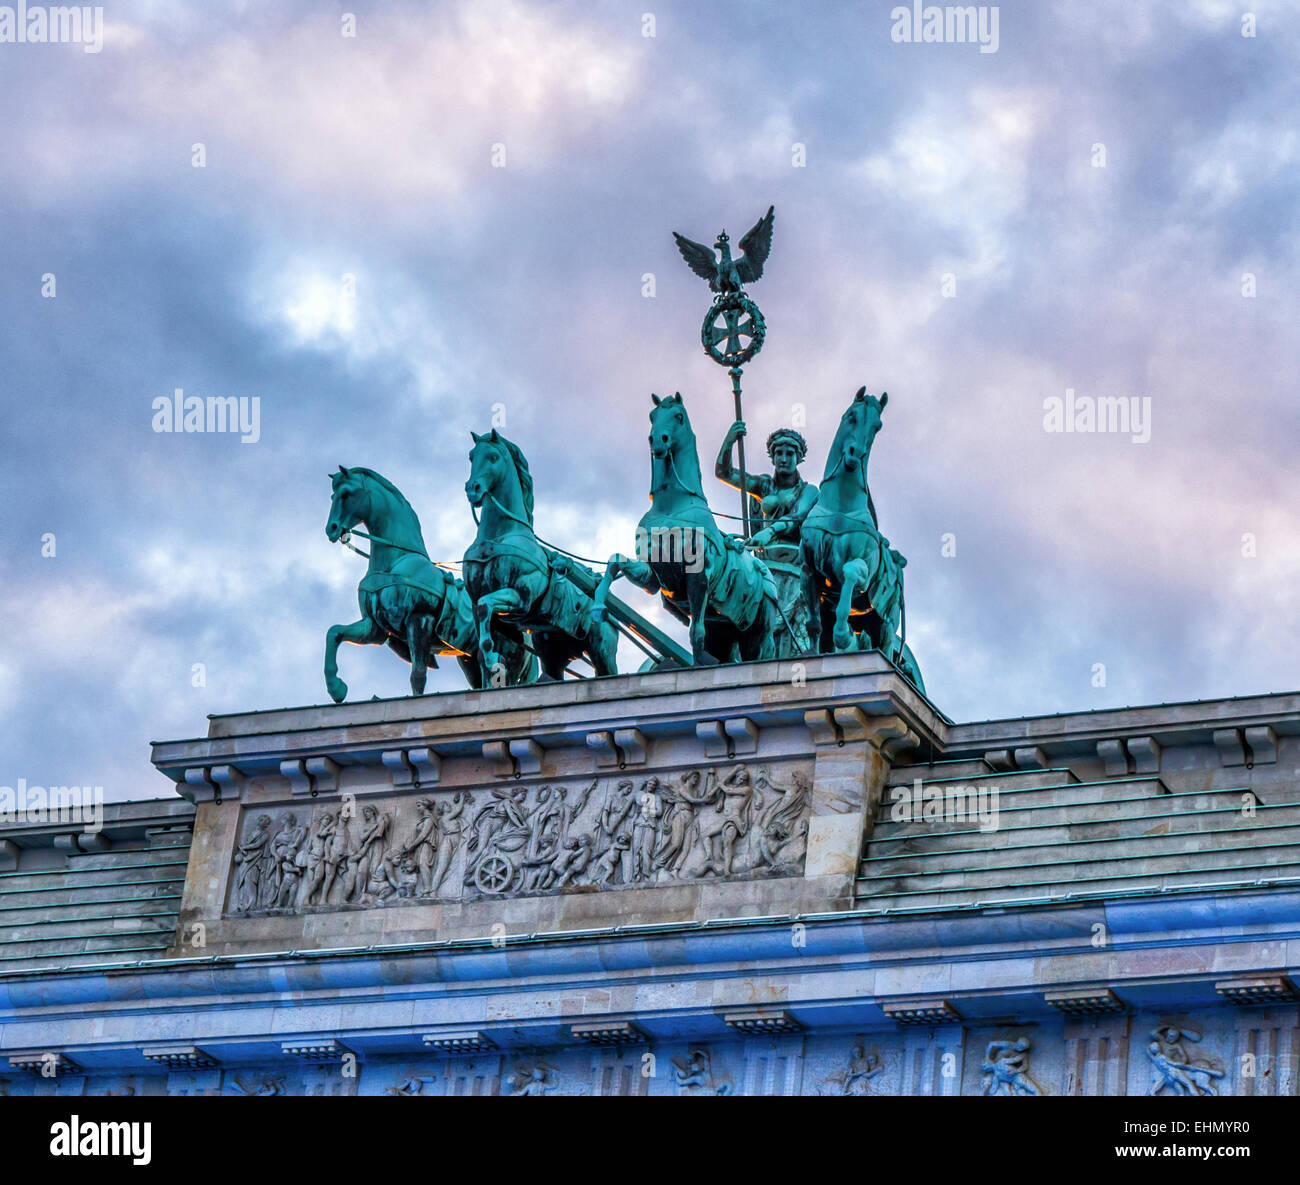 Porte de Brandebourg, Brandenburger Tor. Peace Sculpture char and Goddess est au sommet de l'arche triomphale néoclassique du XVIIIe siècle sur Pariser Platz, Mitte, Berlin Banque D'Images